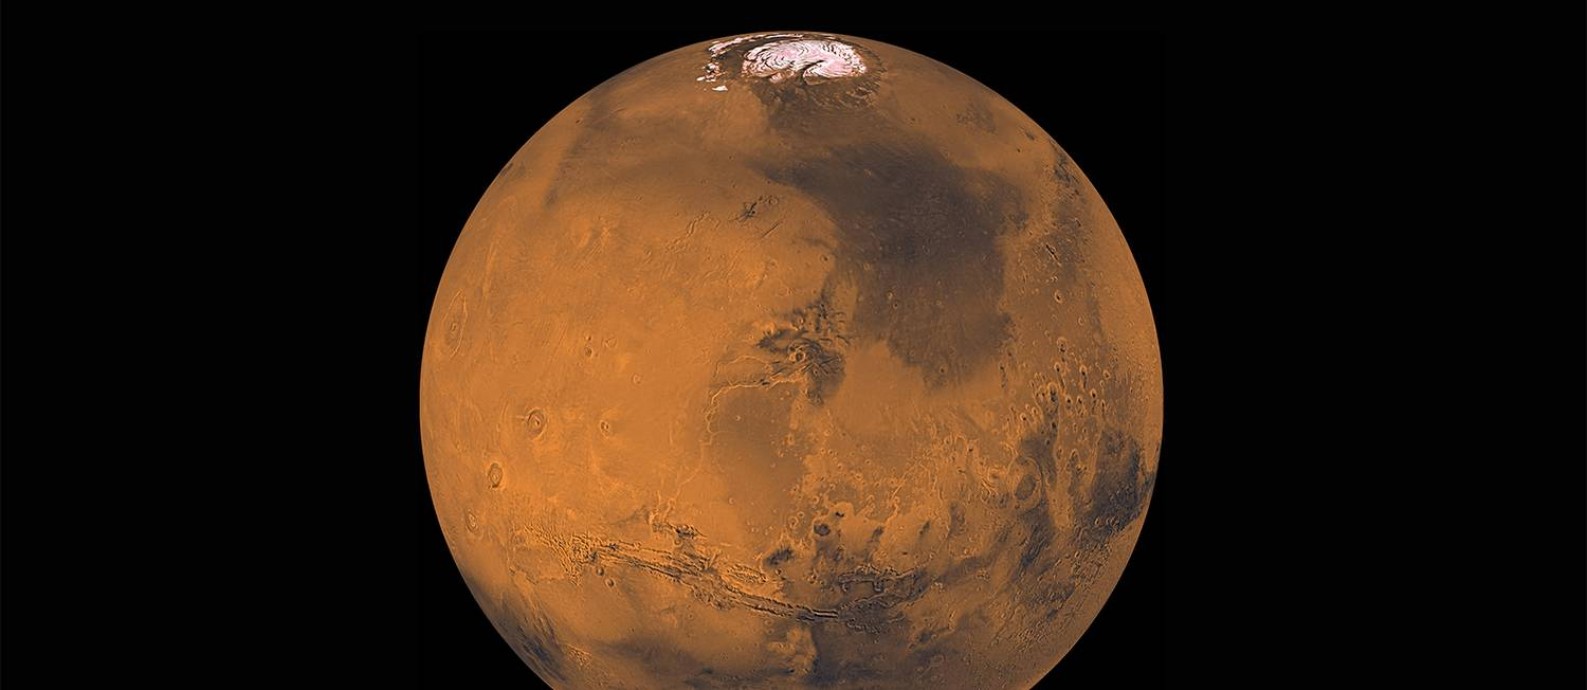 
Imagem de Marte construída a partir de observações da sonda americana Viking 1 nos anos 1970: ciência moderna destruiu ilusões de uma civilização marciana, mostrando um ambiente inóspito, extremamente frio e seco
Foto:
/
Nasa/JPL
